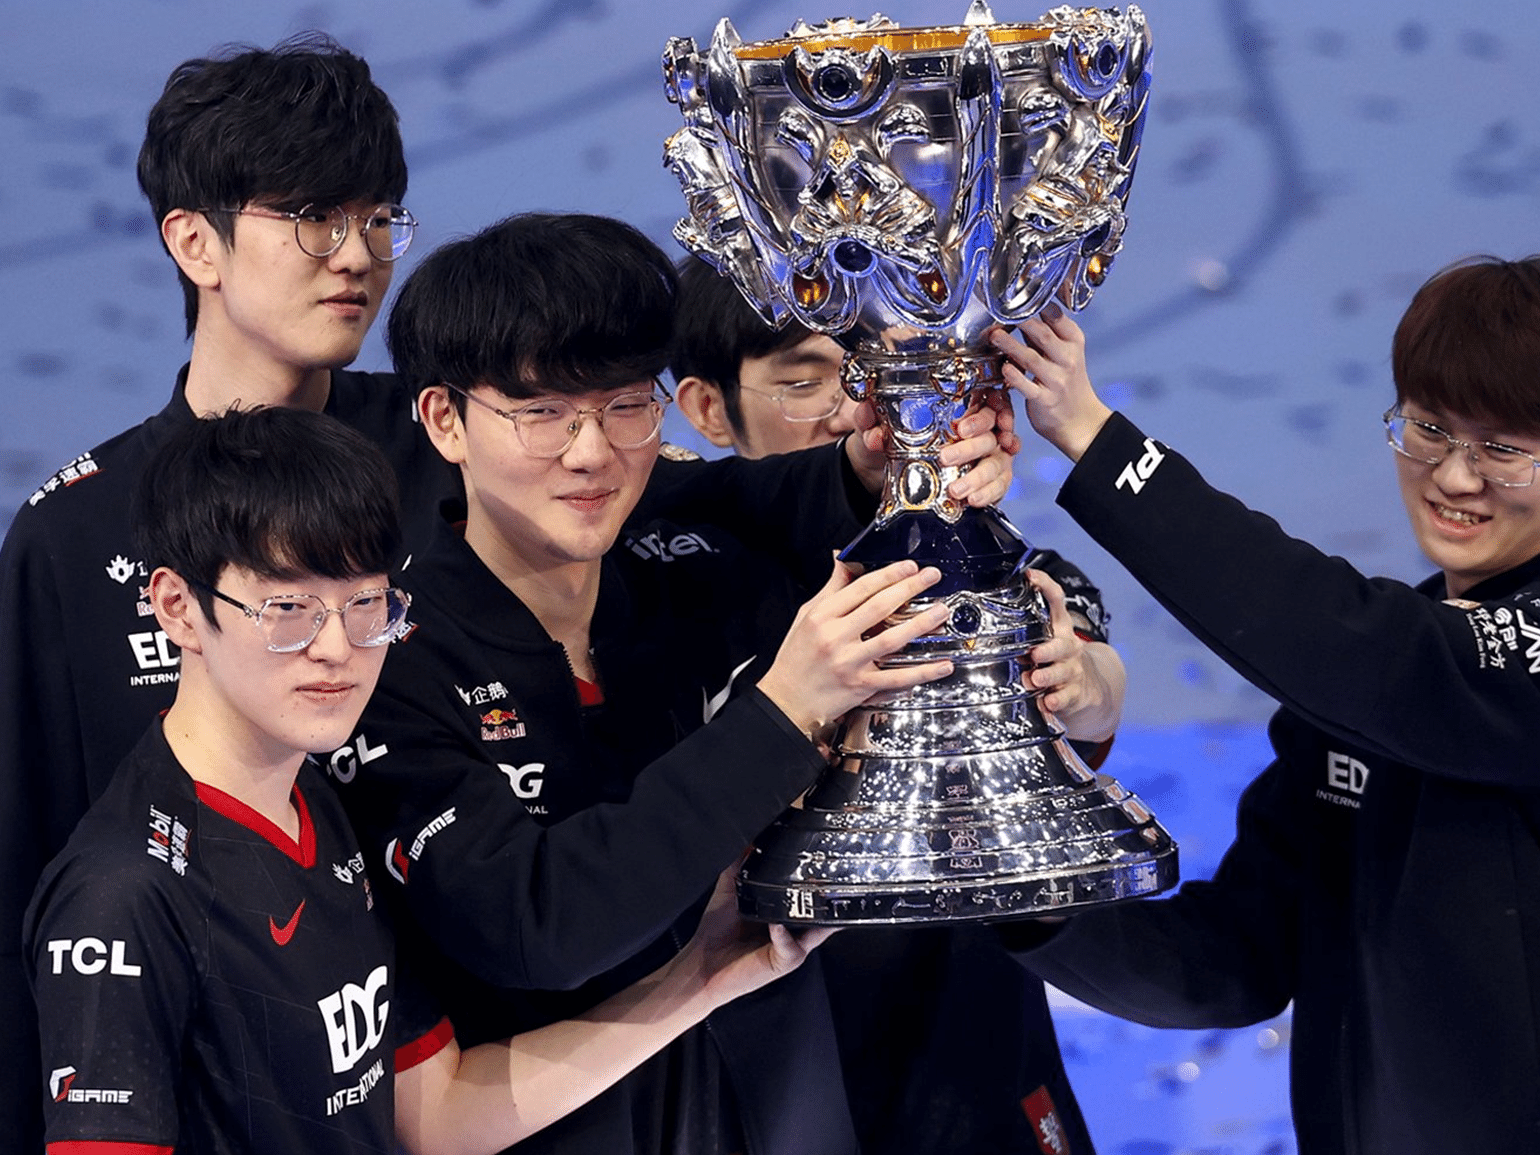 Equipe chinesa EDG conquista título mundial do League of Legends - Folha PE